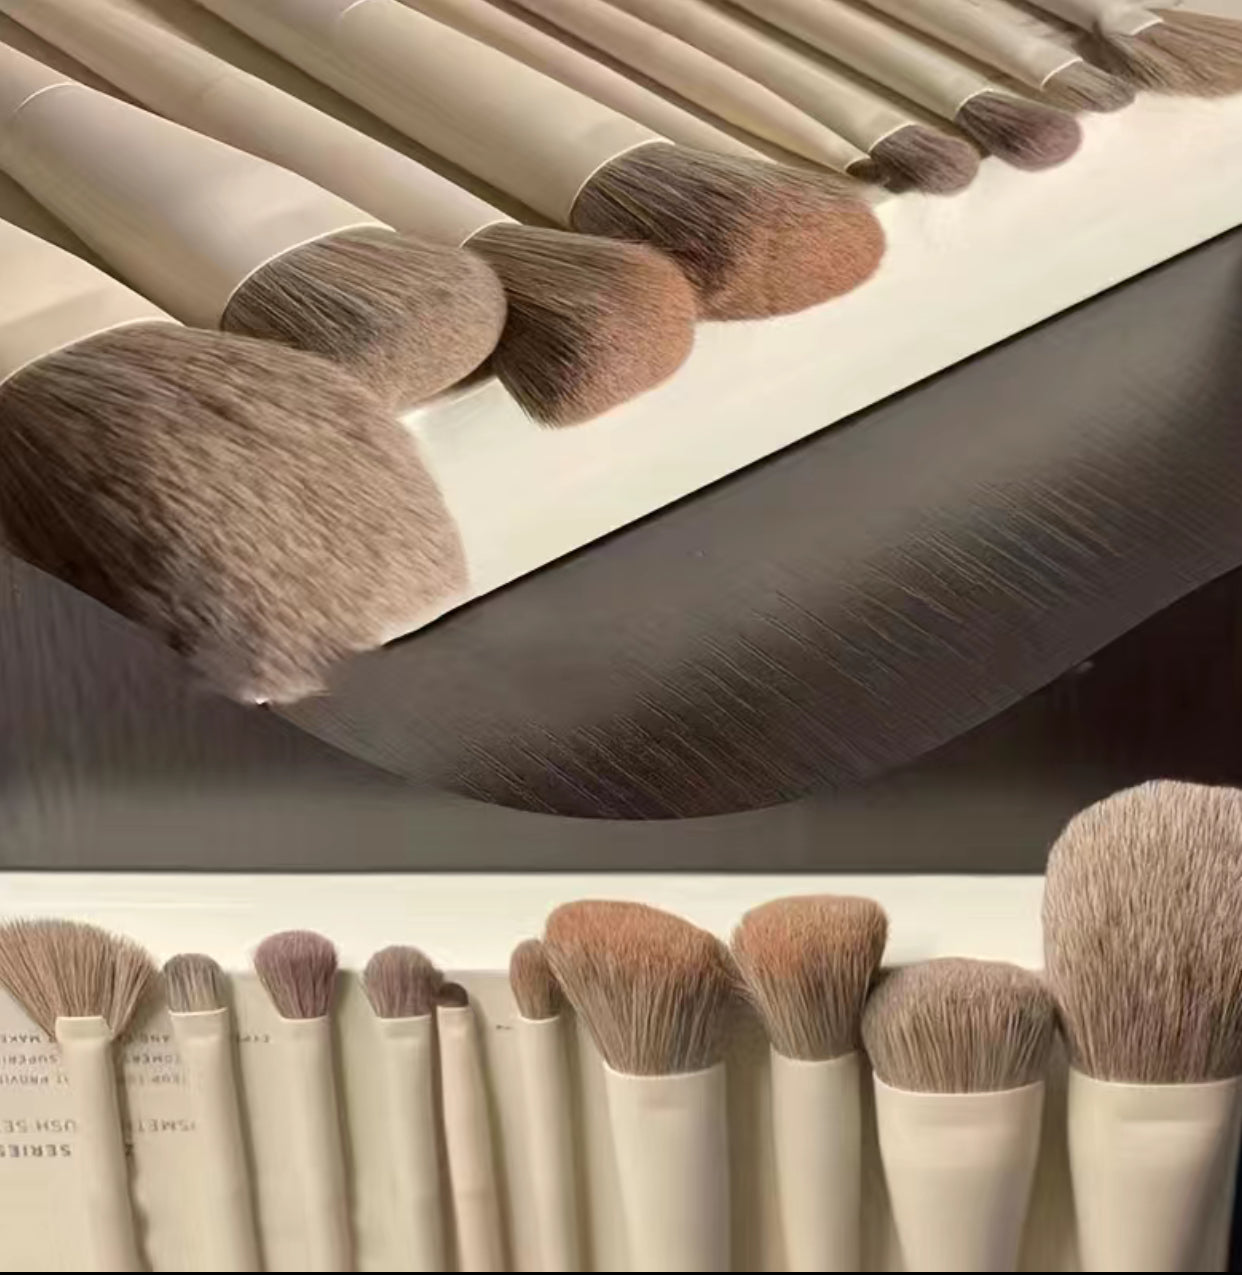 10pc Makeup Brush Set